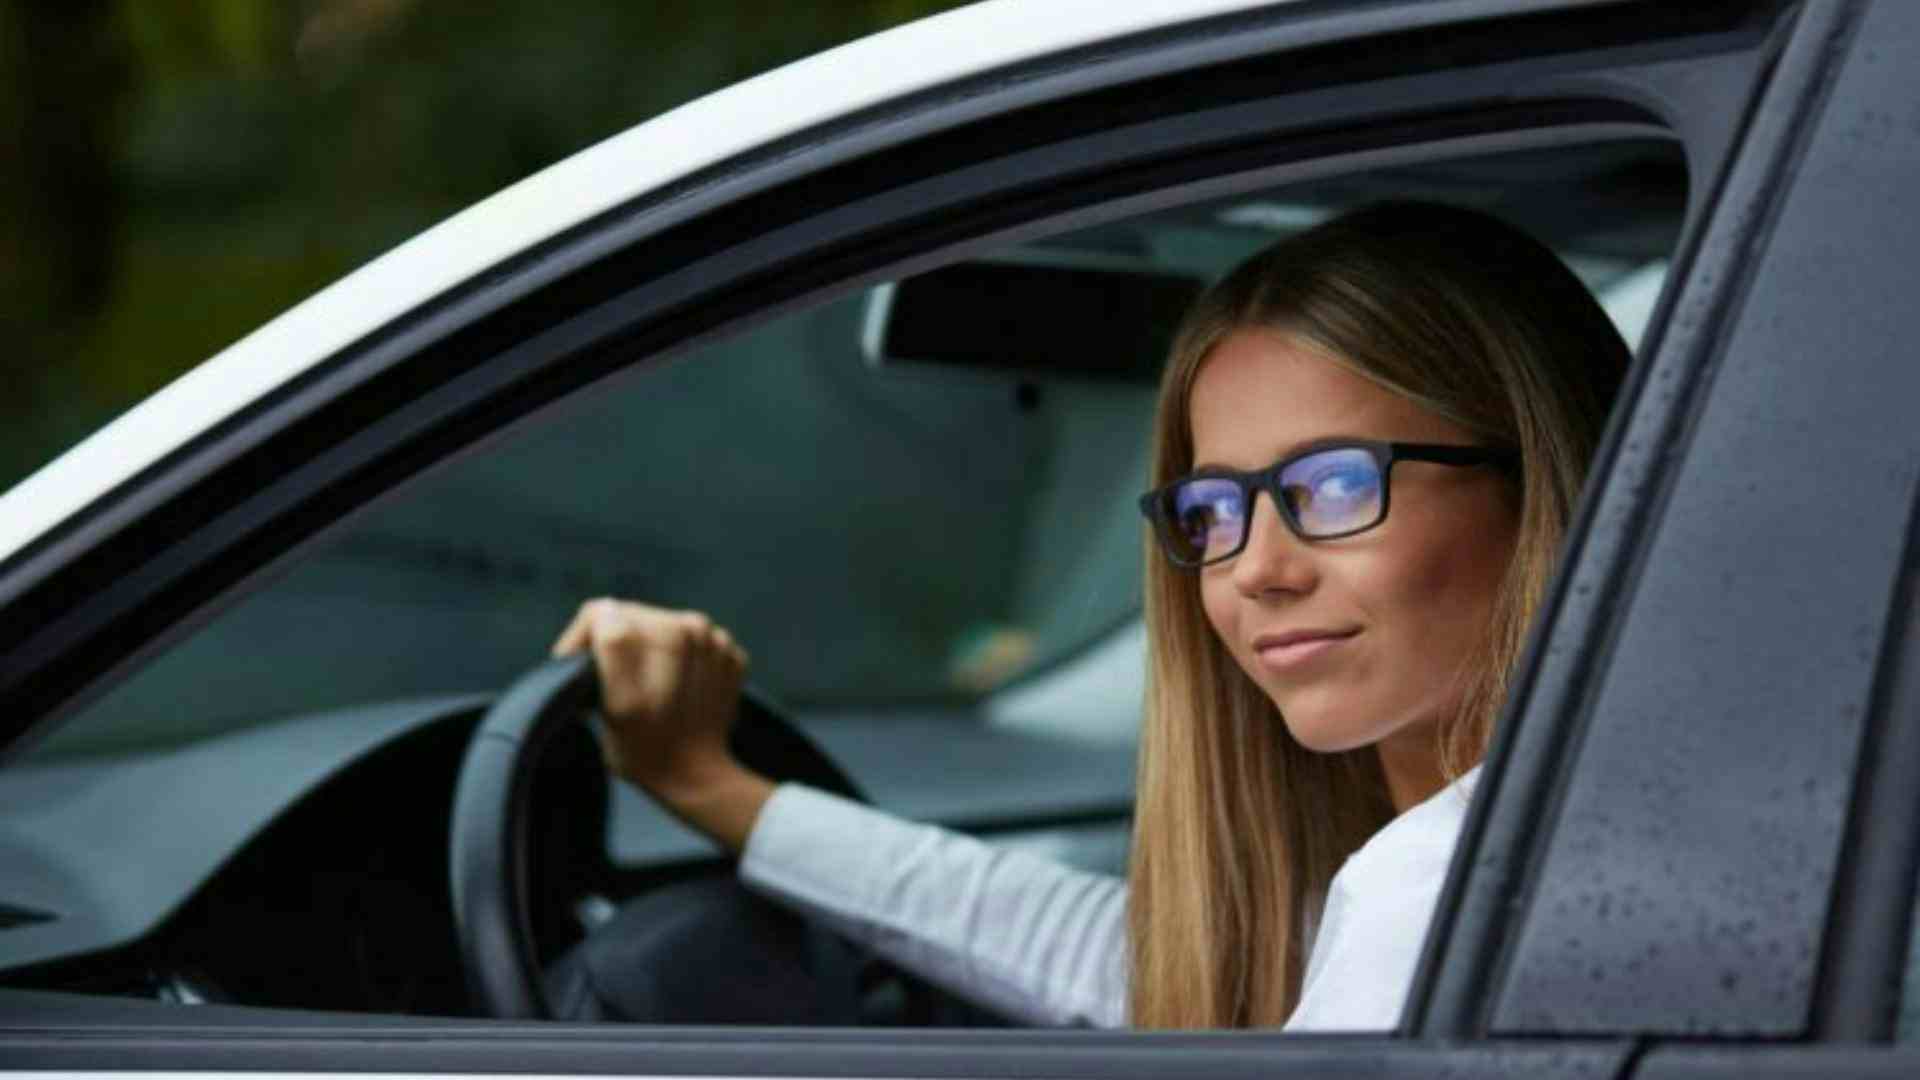 Multa por dirigir sem óculos